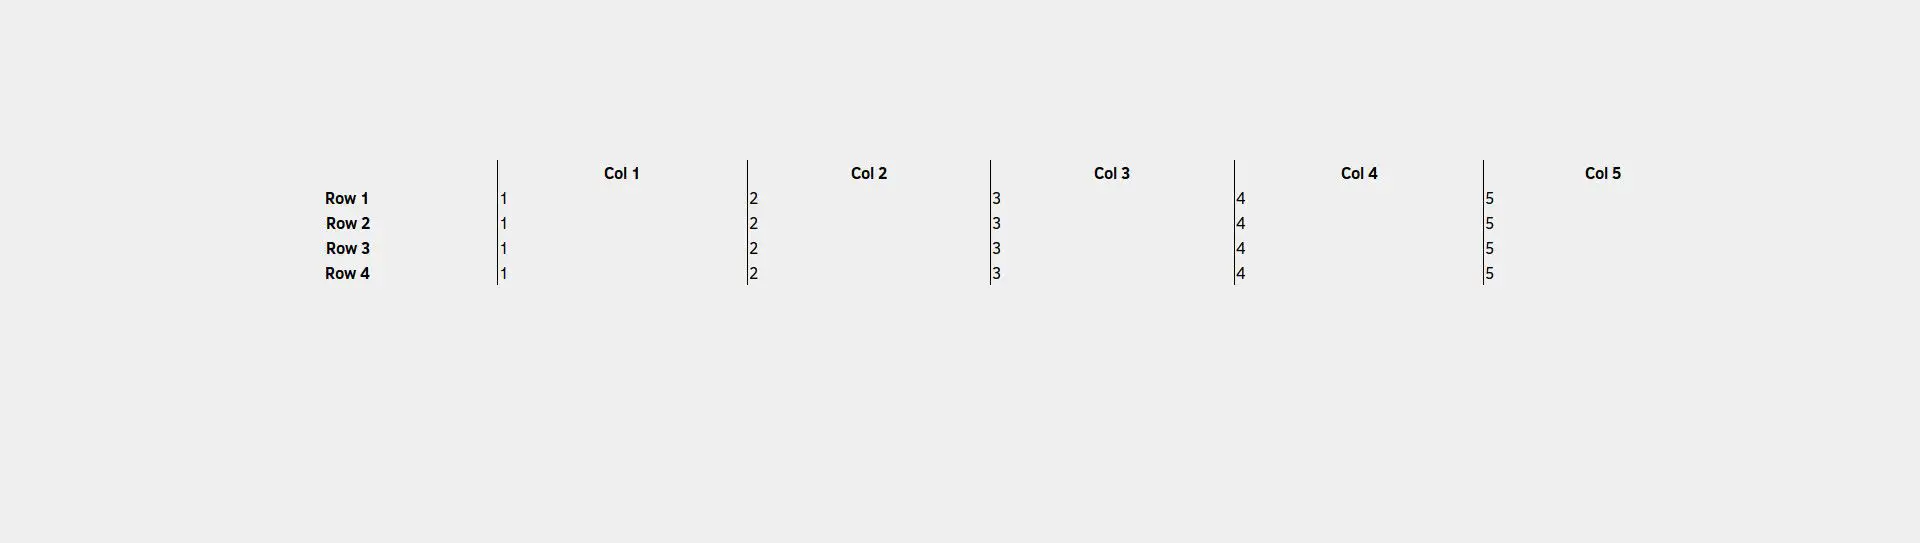 Tabela CSS com borda esquerda removida na primeira coluna